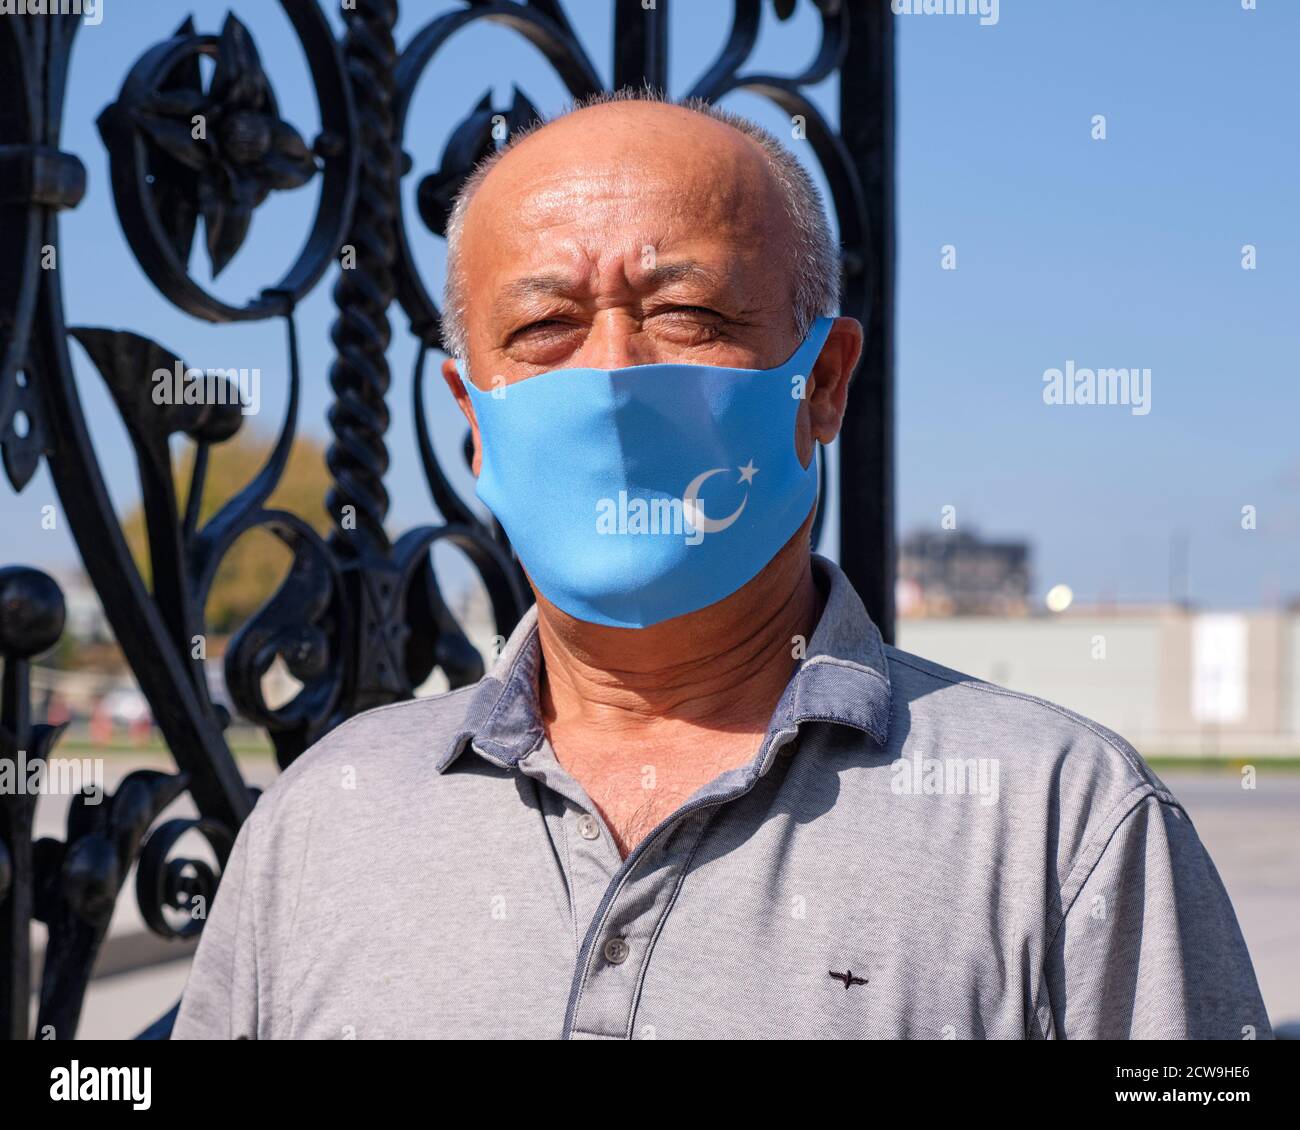 Le manifestant Uyghur portant un masque représentant le drapeau d'Uyghuristan fourni par l'organisateur en raison d'une pandémie Banque D'Images